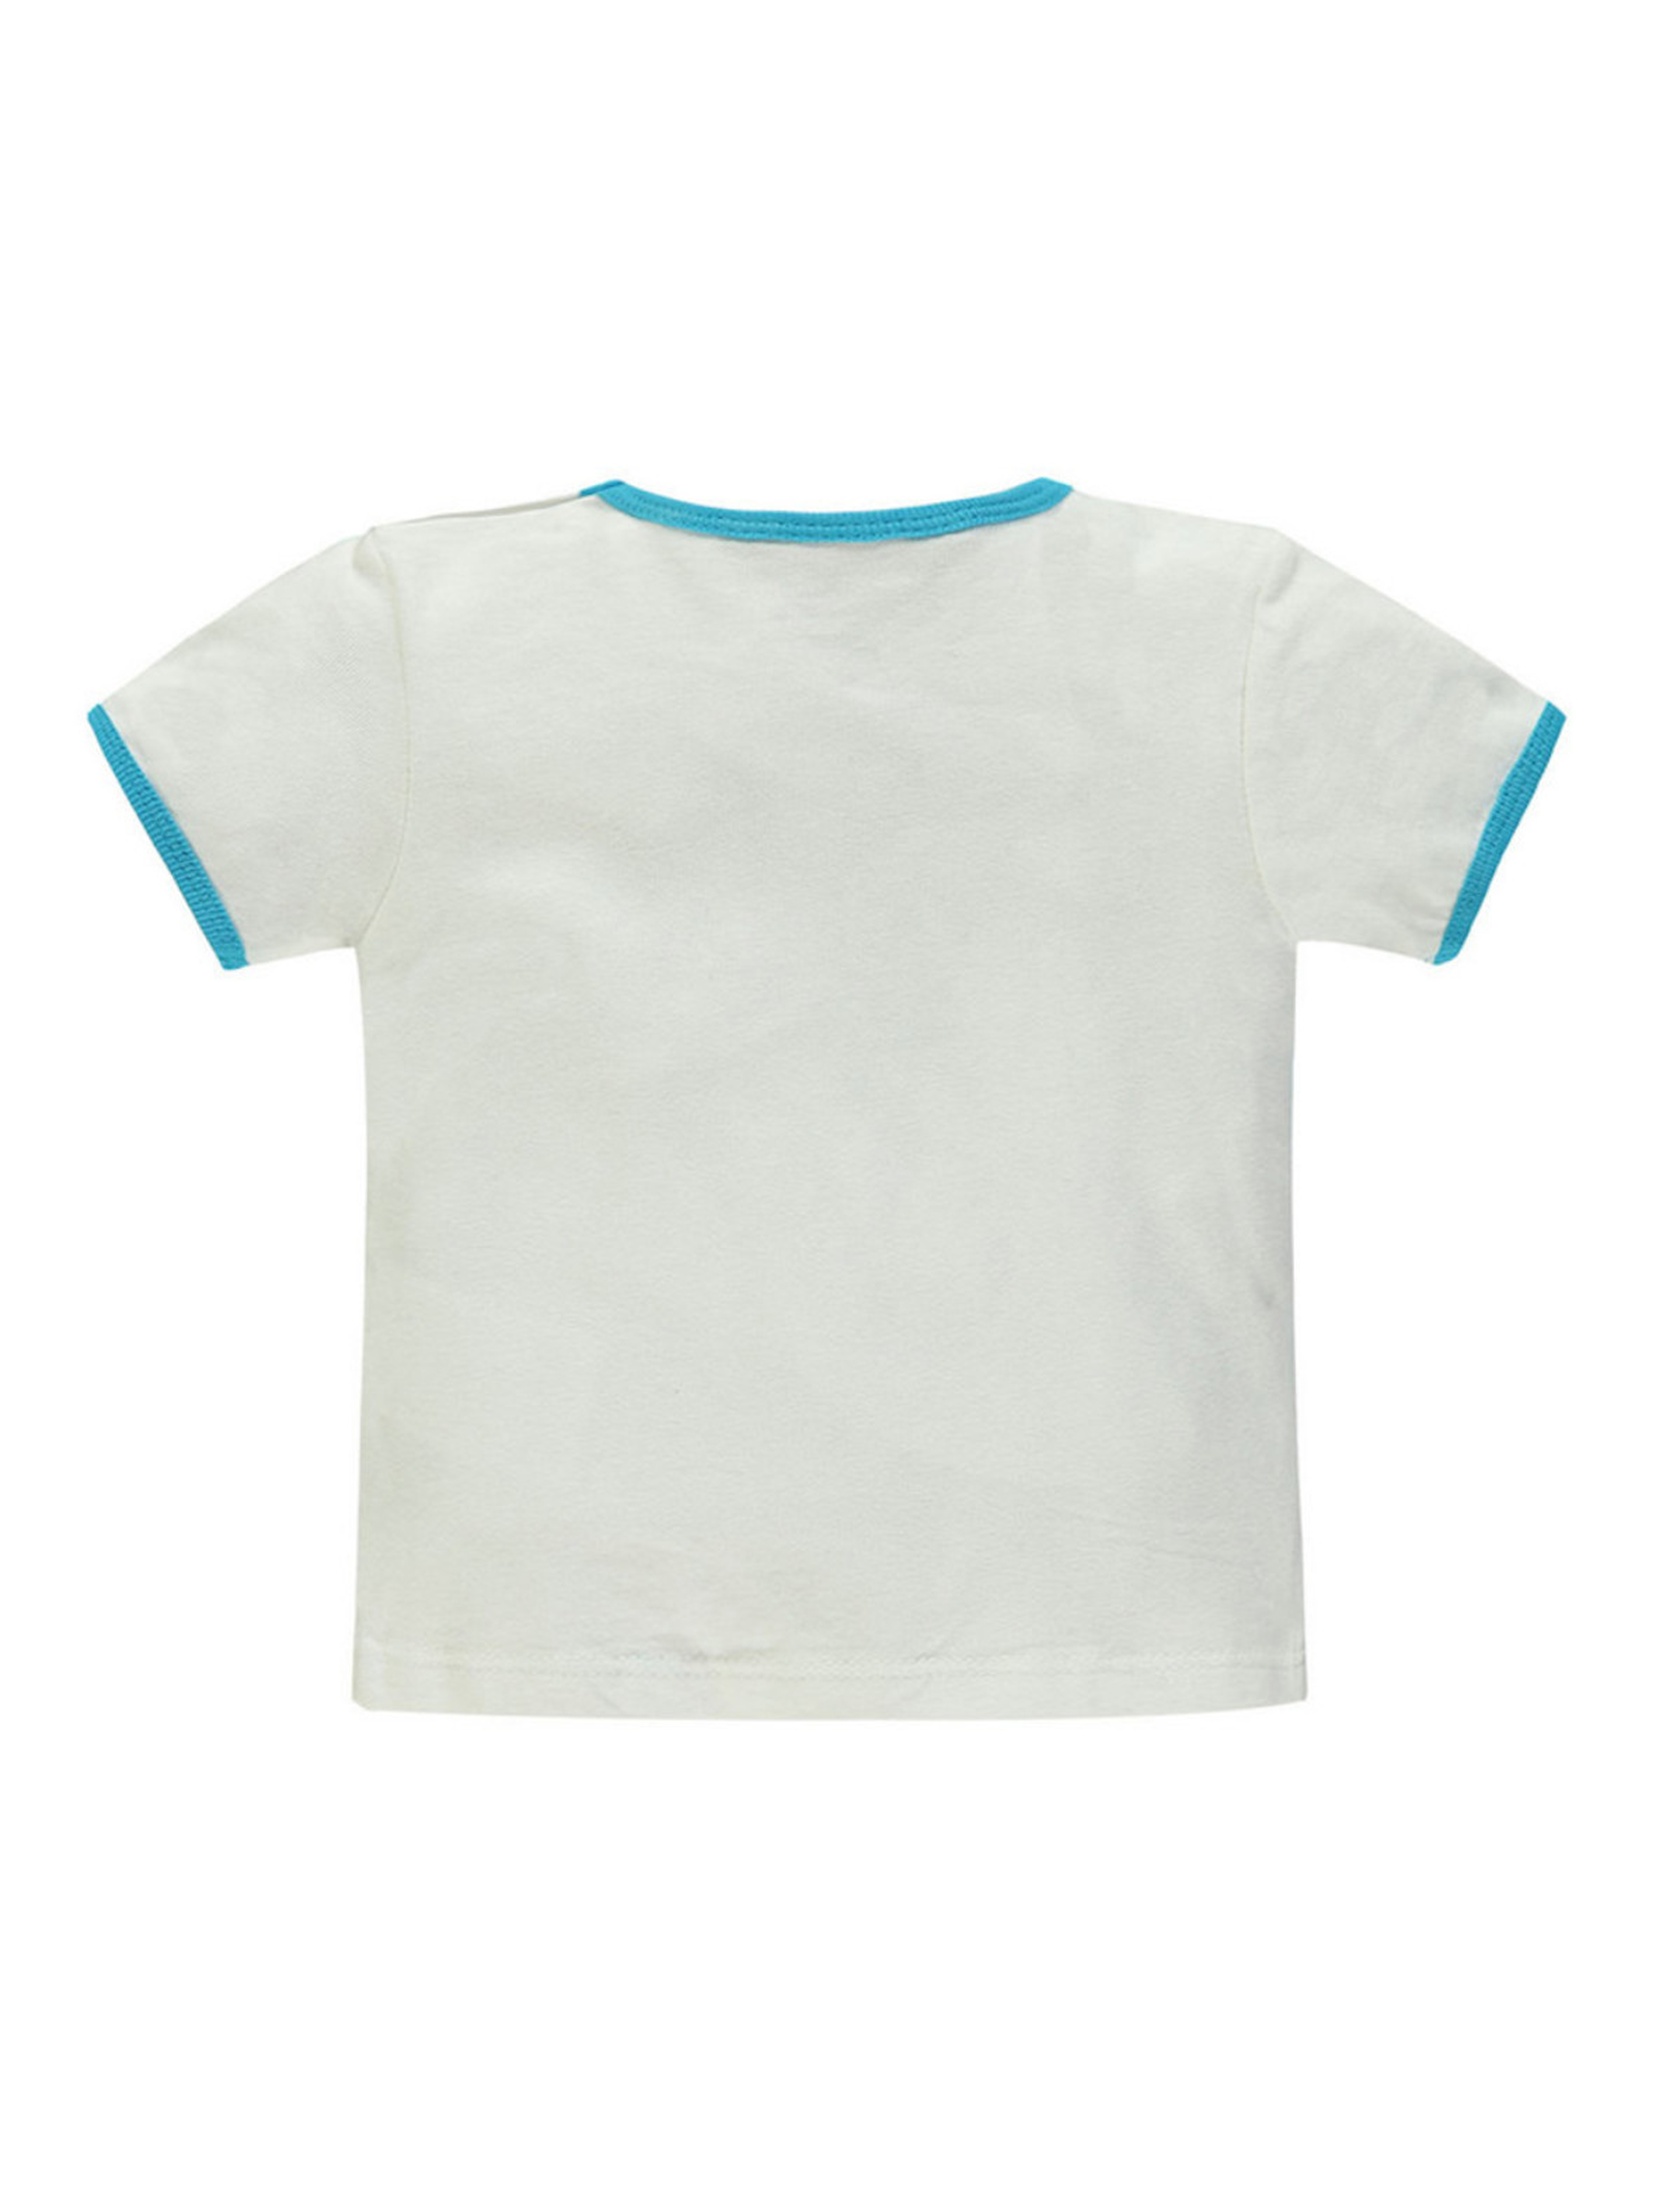 Chłopięca niemowlęca bluzka z krótkim rękawem biała